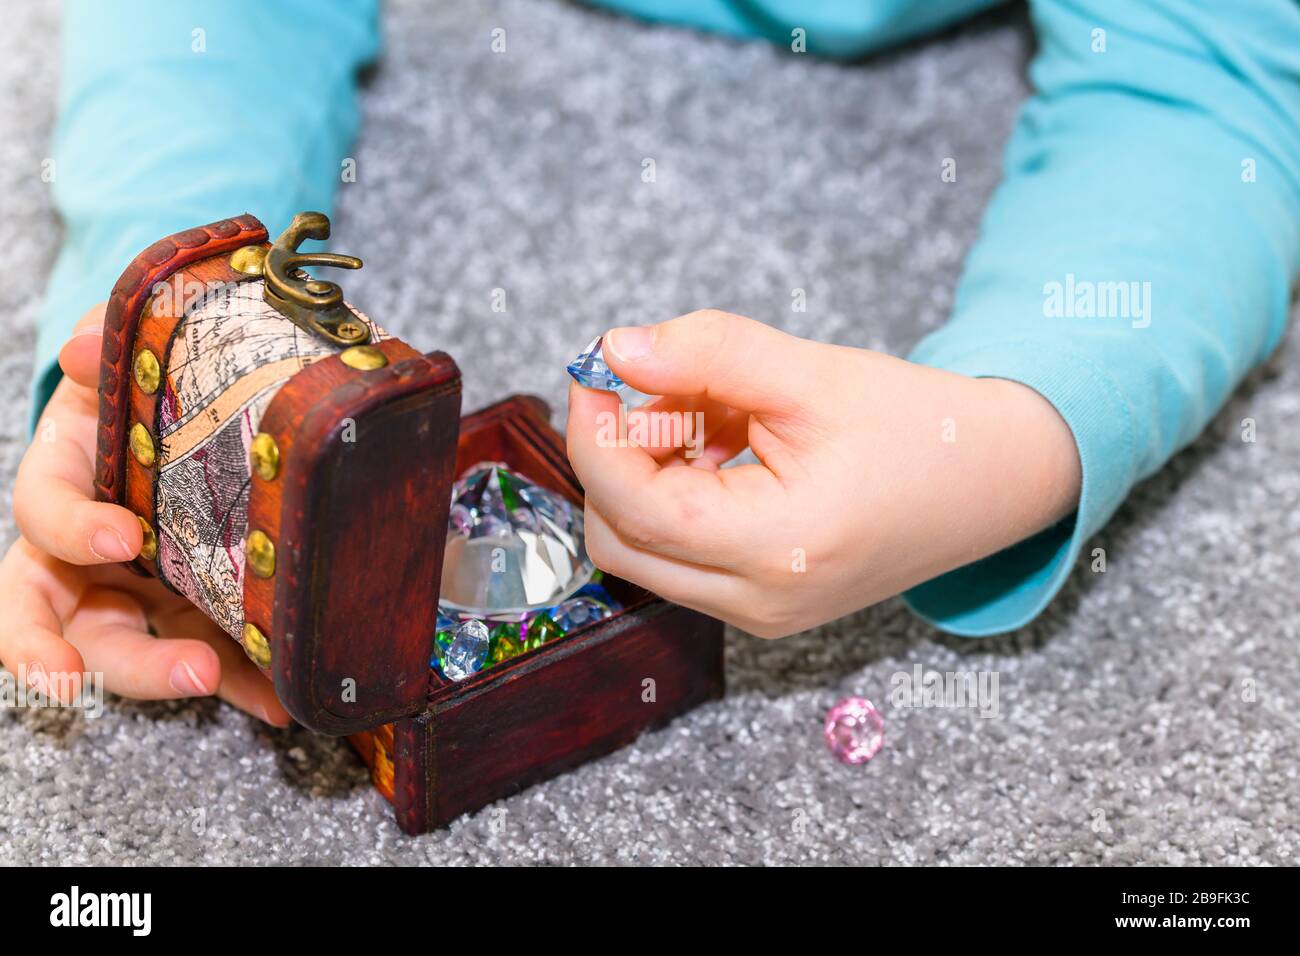 Ragazzo di cinque anni che gioca con una cassa del tesoro piena di gemme multicolori. Il ragazzo ha una camicia turchese e tiene una gemma blu. Foto Stock